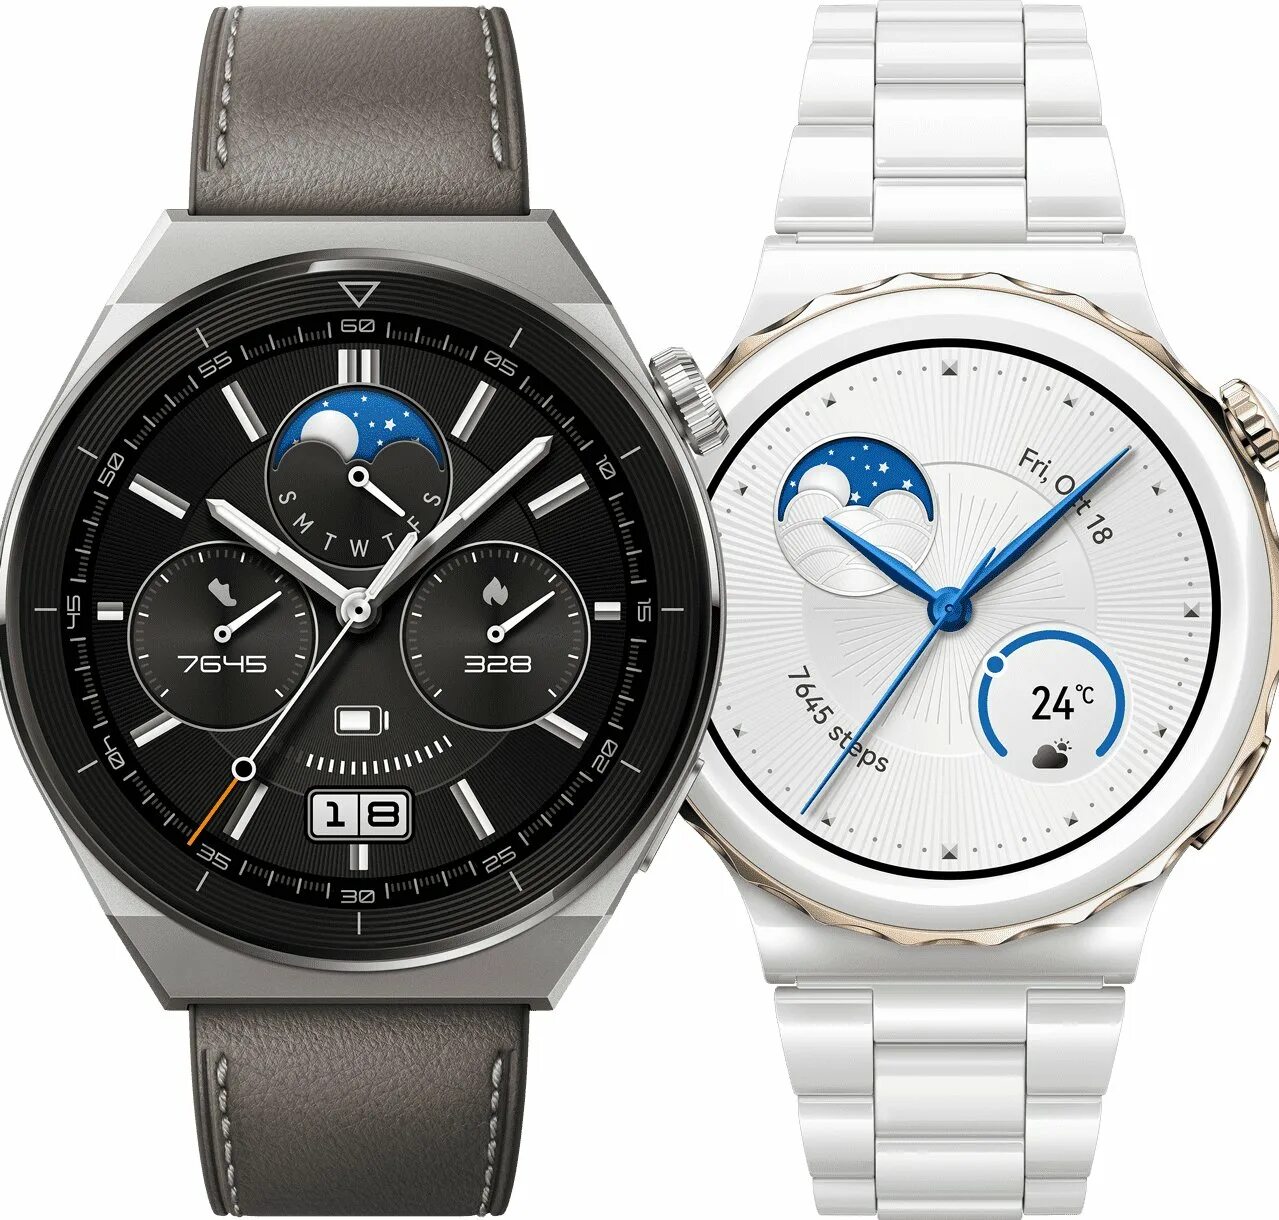 Huawei watch 2022. Huawei watch gt 3. Часы Huawei gt3. Часы Huawei watch gt 3 Pro. Huawei watch 3 pro обзор